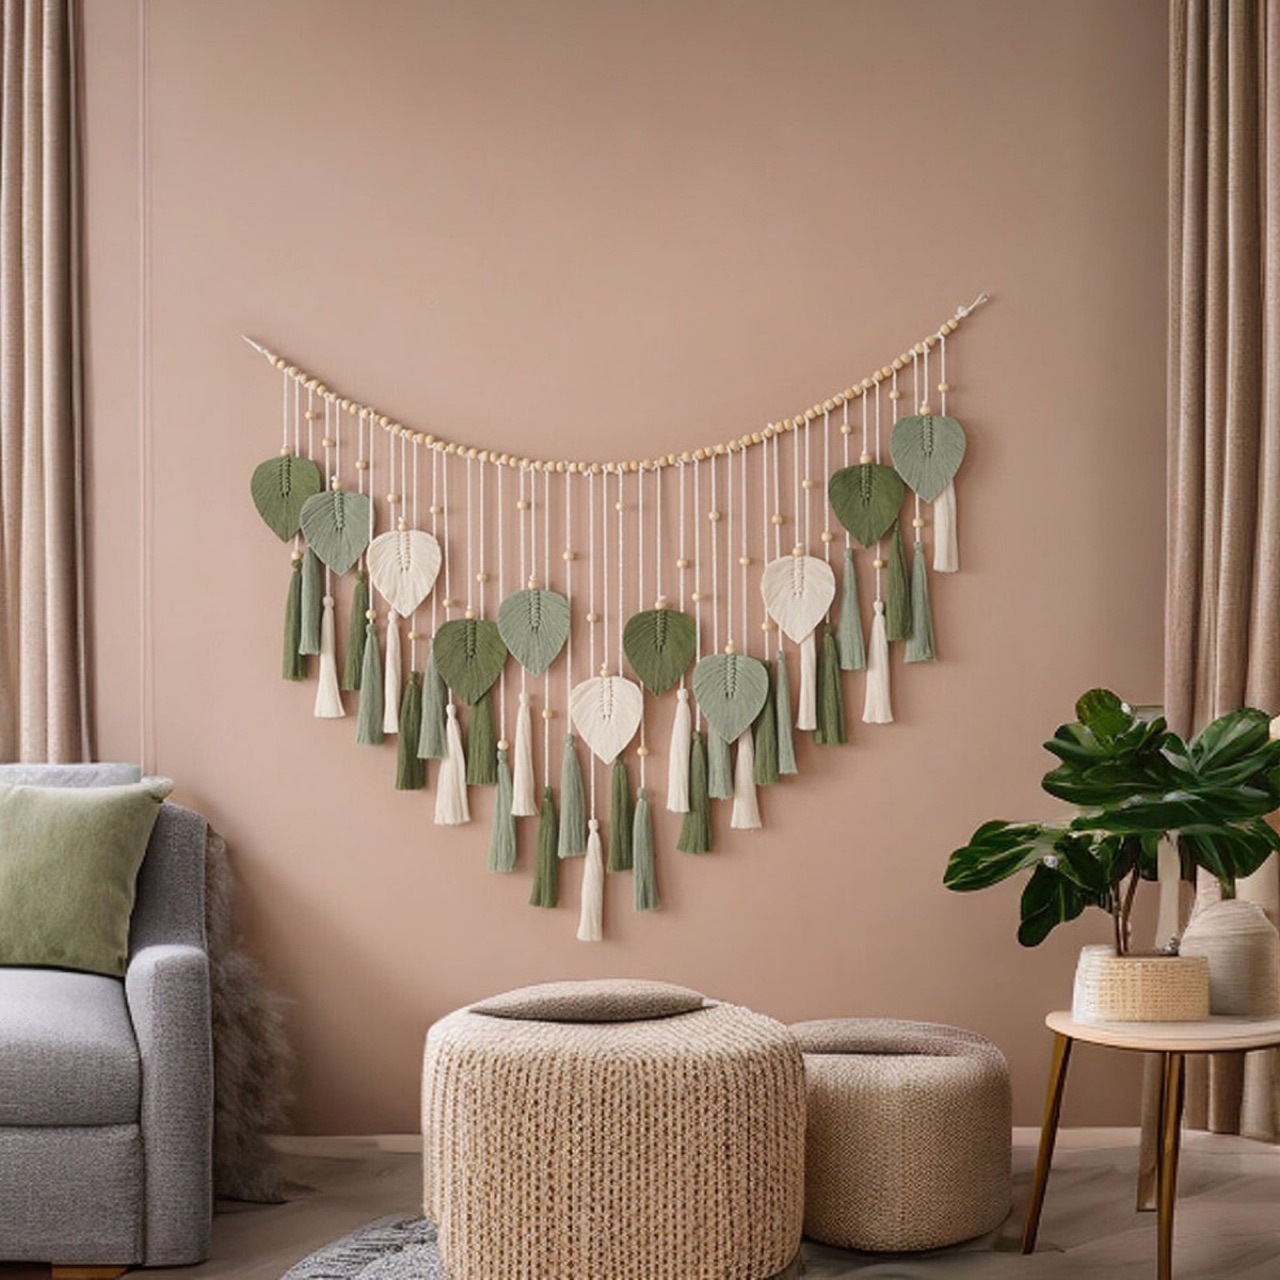 新款创意手工编织棉绳树叶挂毯 波西米亚风家居墙面装饰房间壁挂